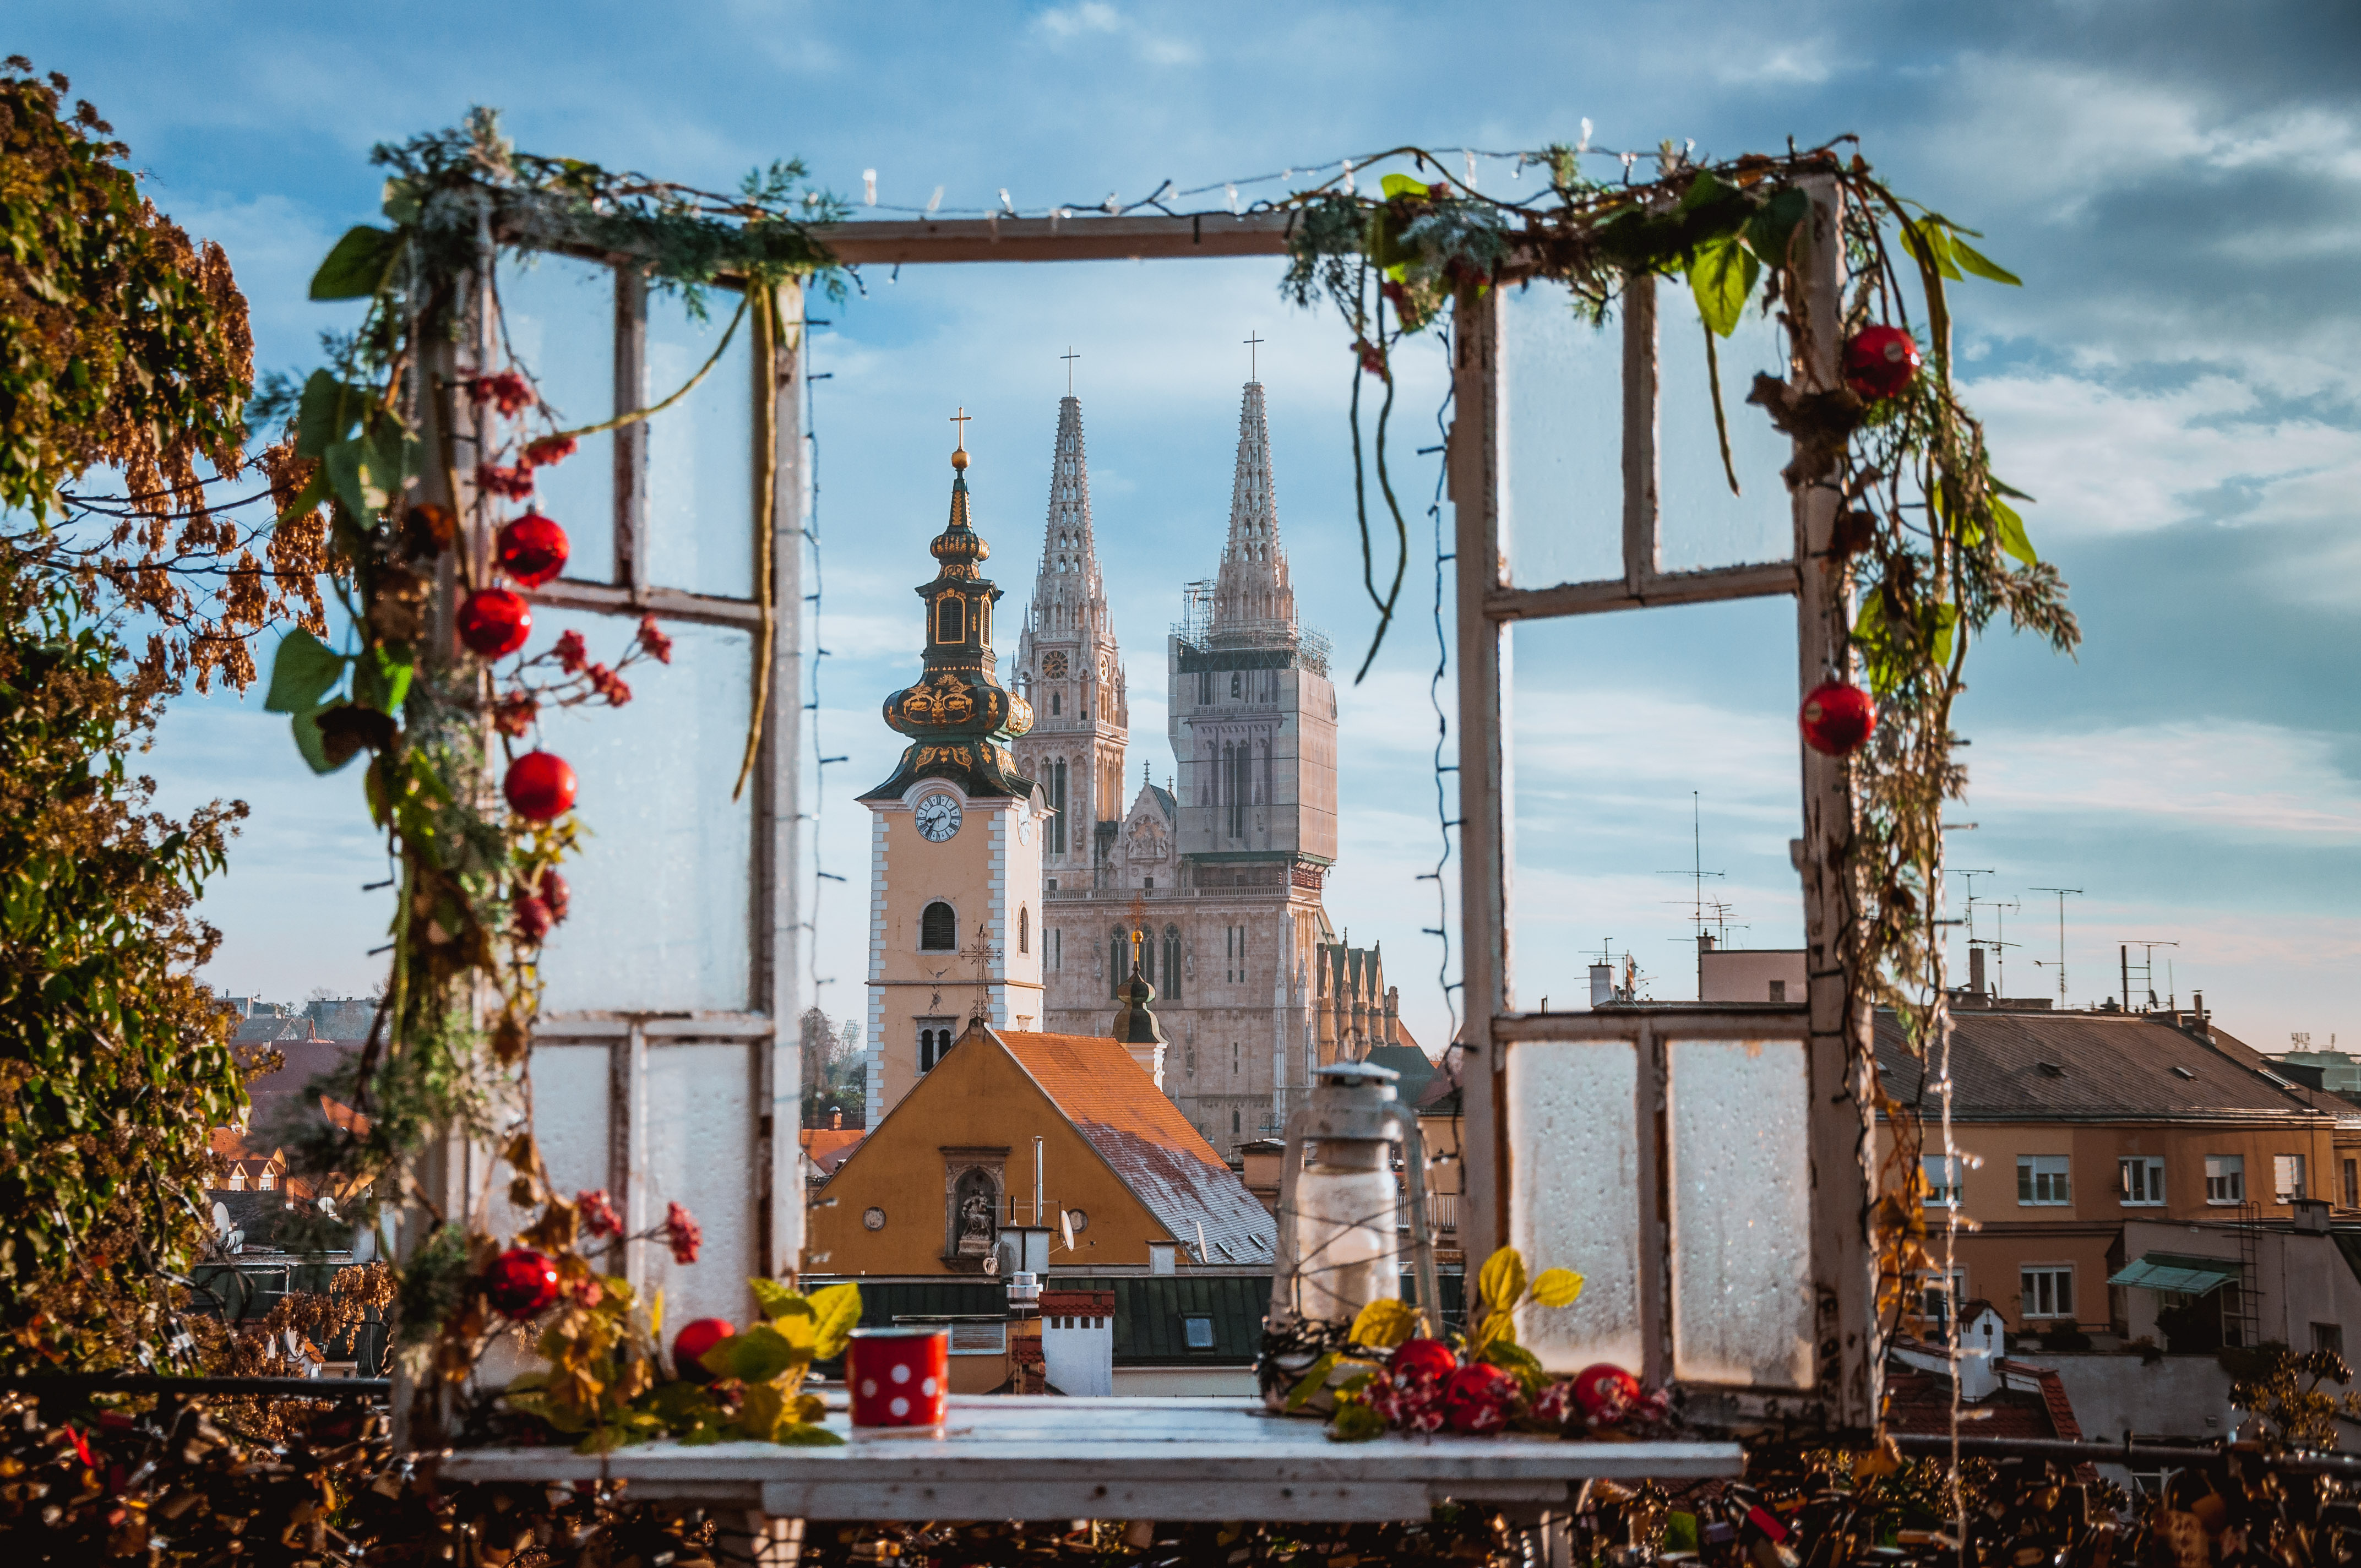 Terra Balka vous partage son nouvel itinéraire en train, à travers les marchés de Noël d’Europe centrale